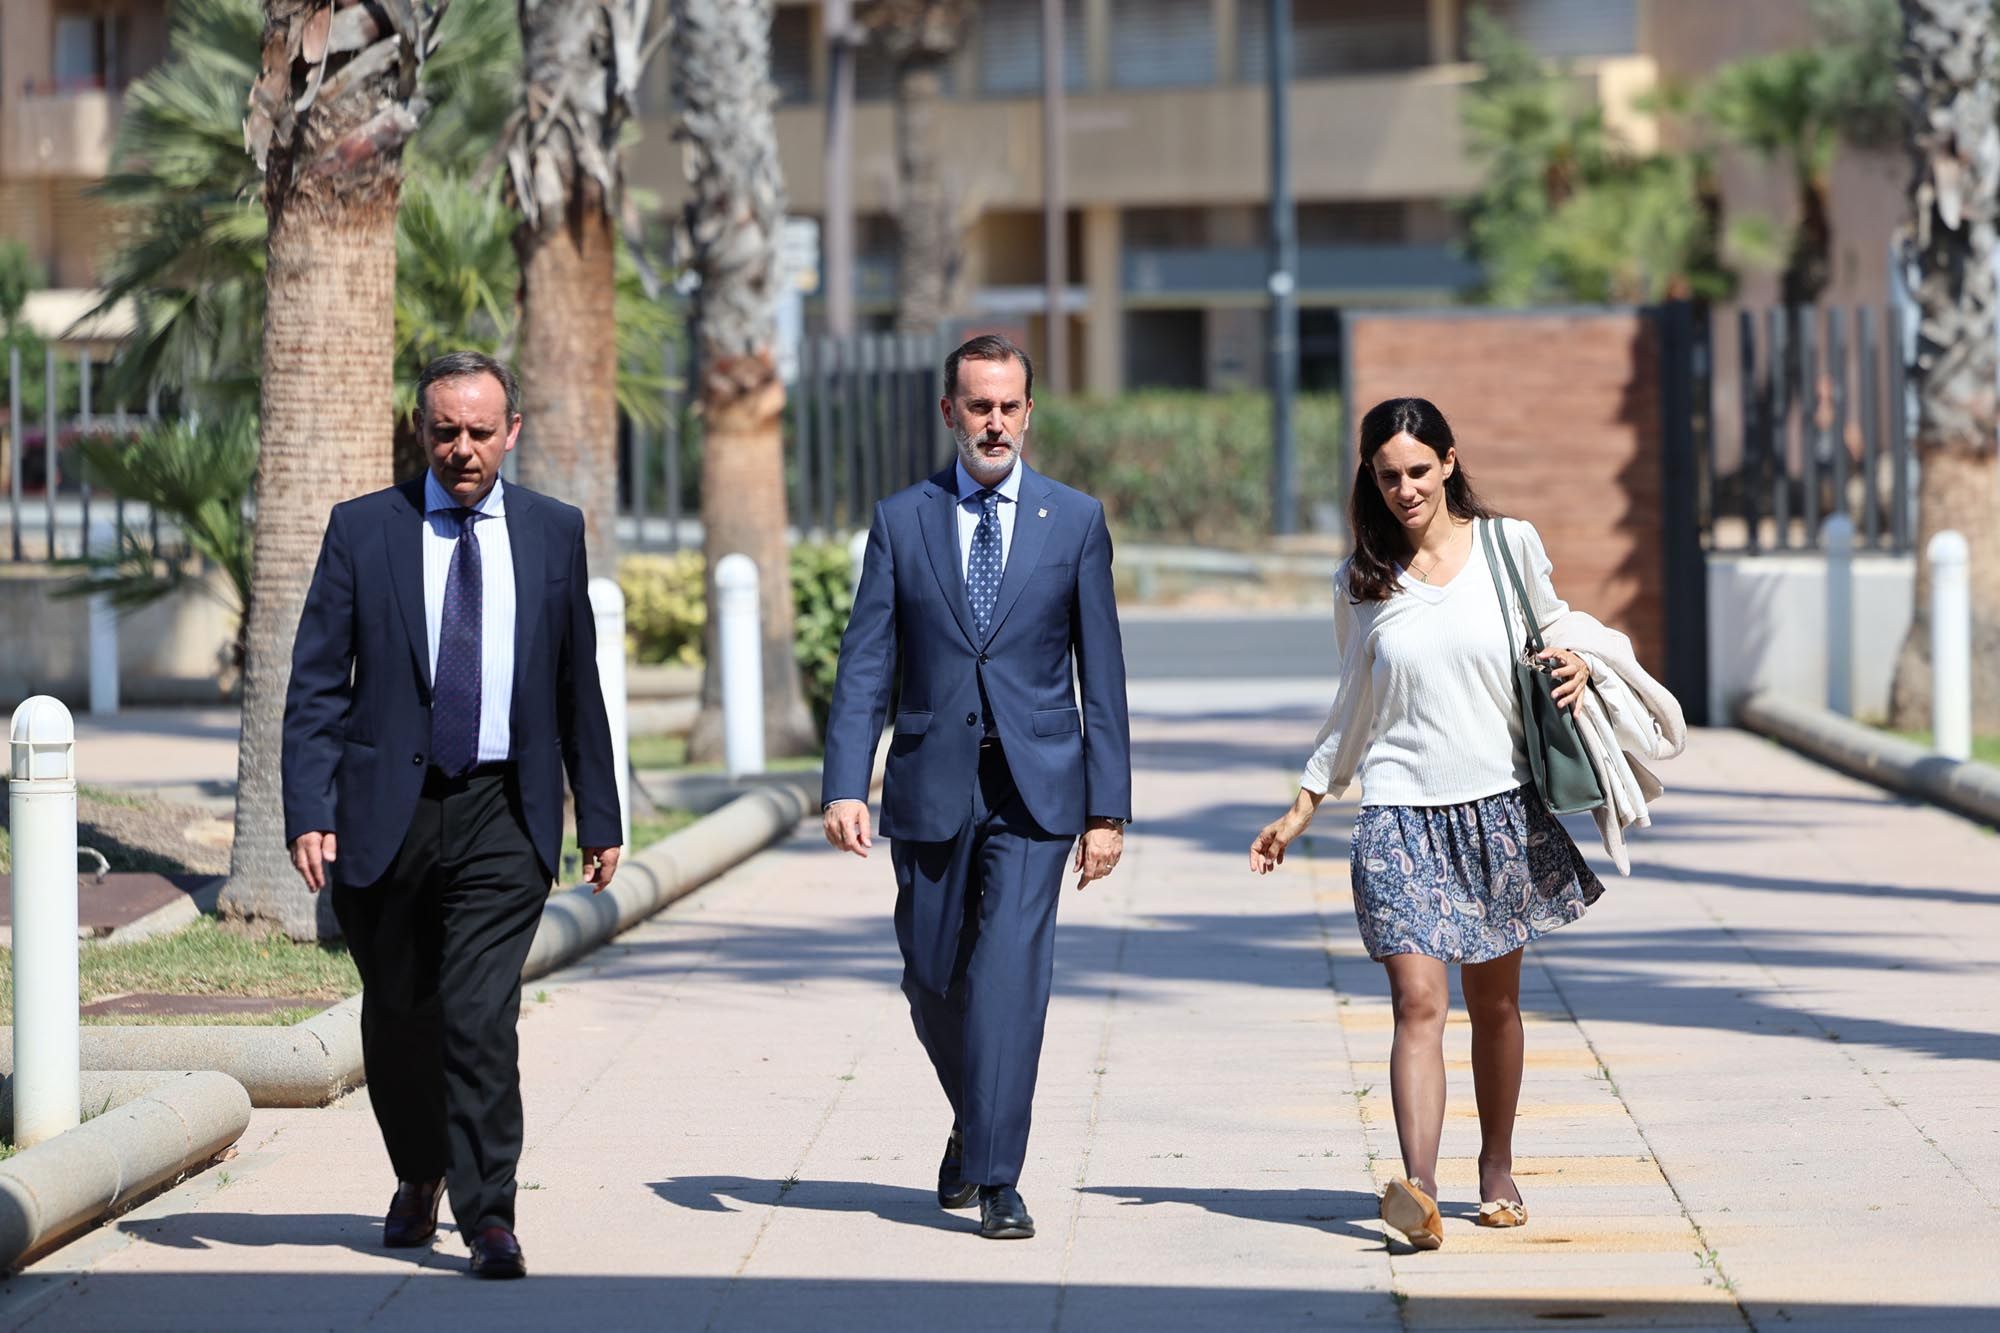 El presidente del Parlament balear, Gabriel Lesenne y Presedo, visita Diario de Ibiza